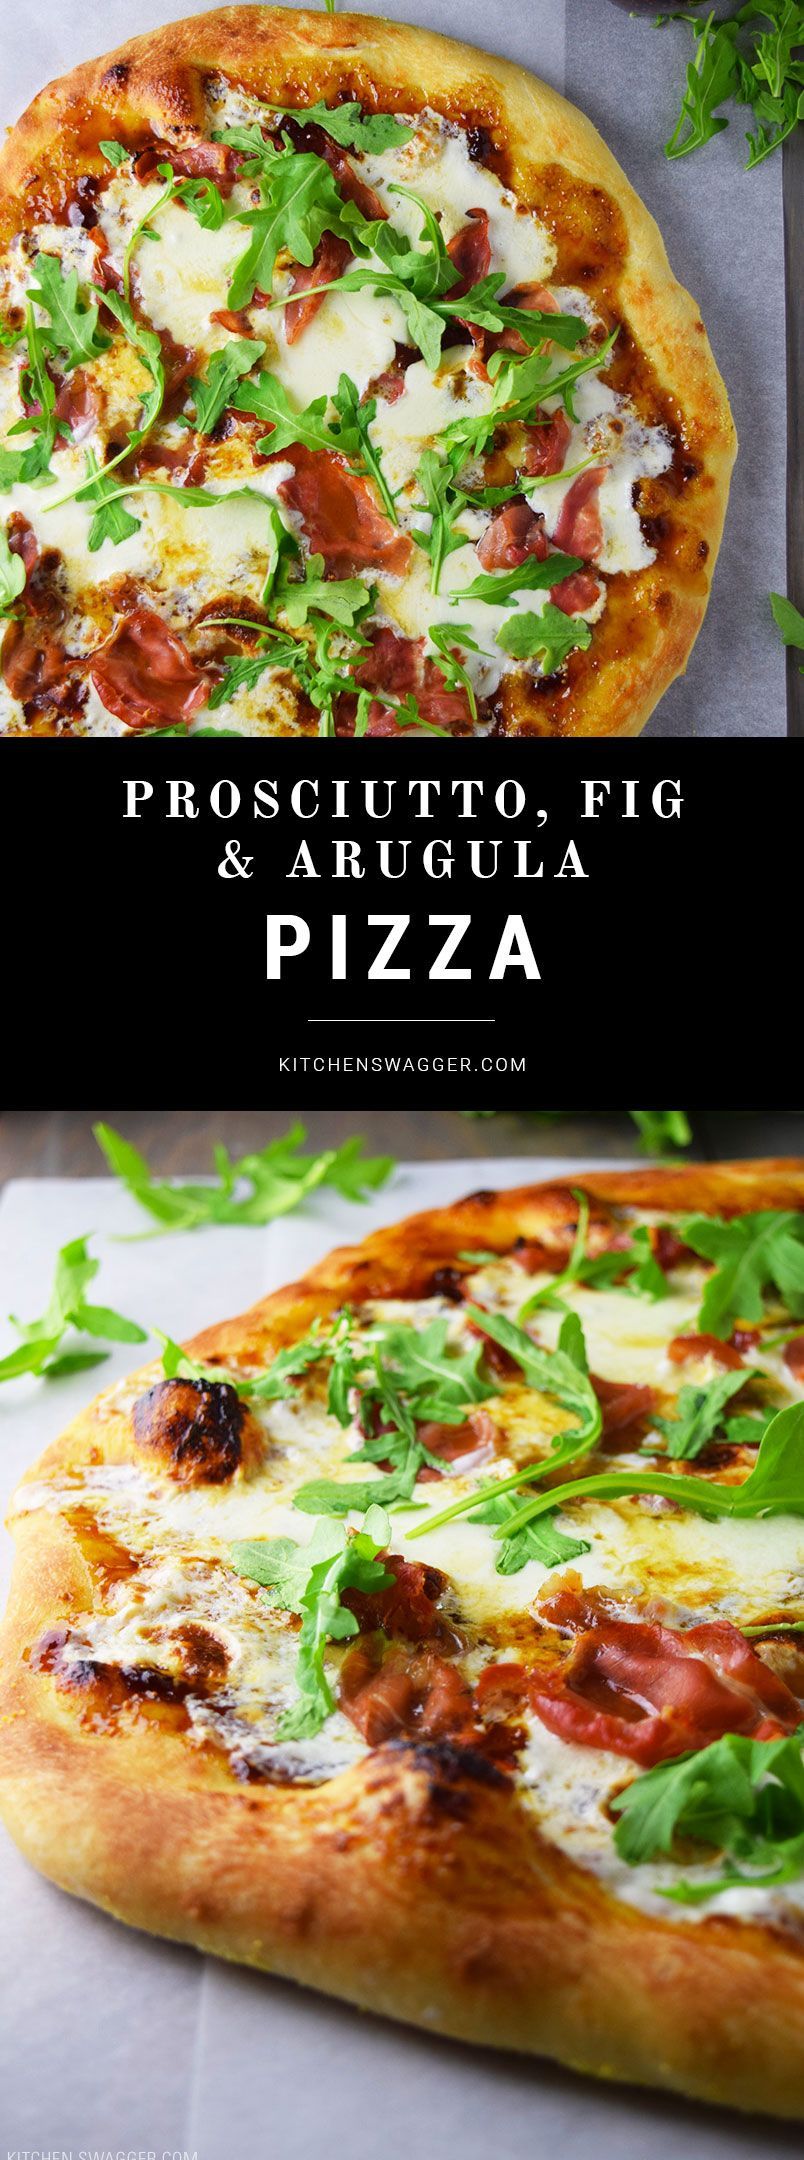 Prosciutto, Fig, and Arugula Pizza -   25 pizza recipes prosciutto
 ideas